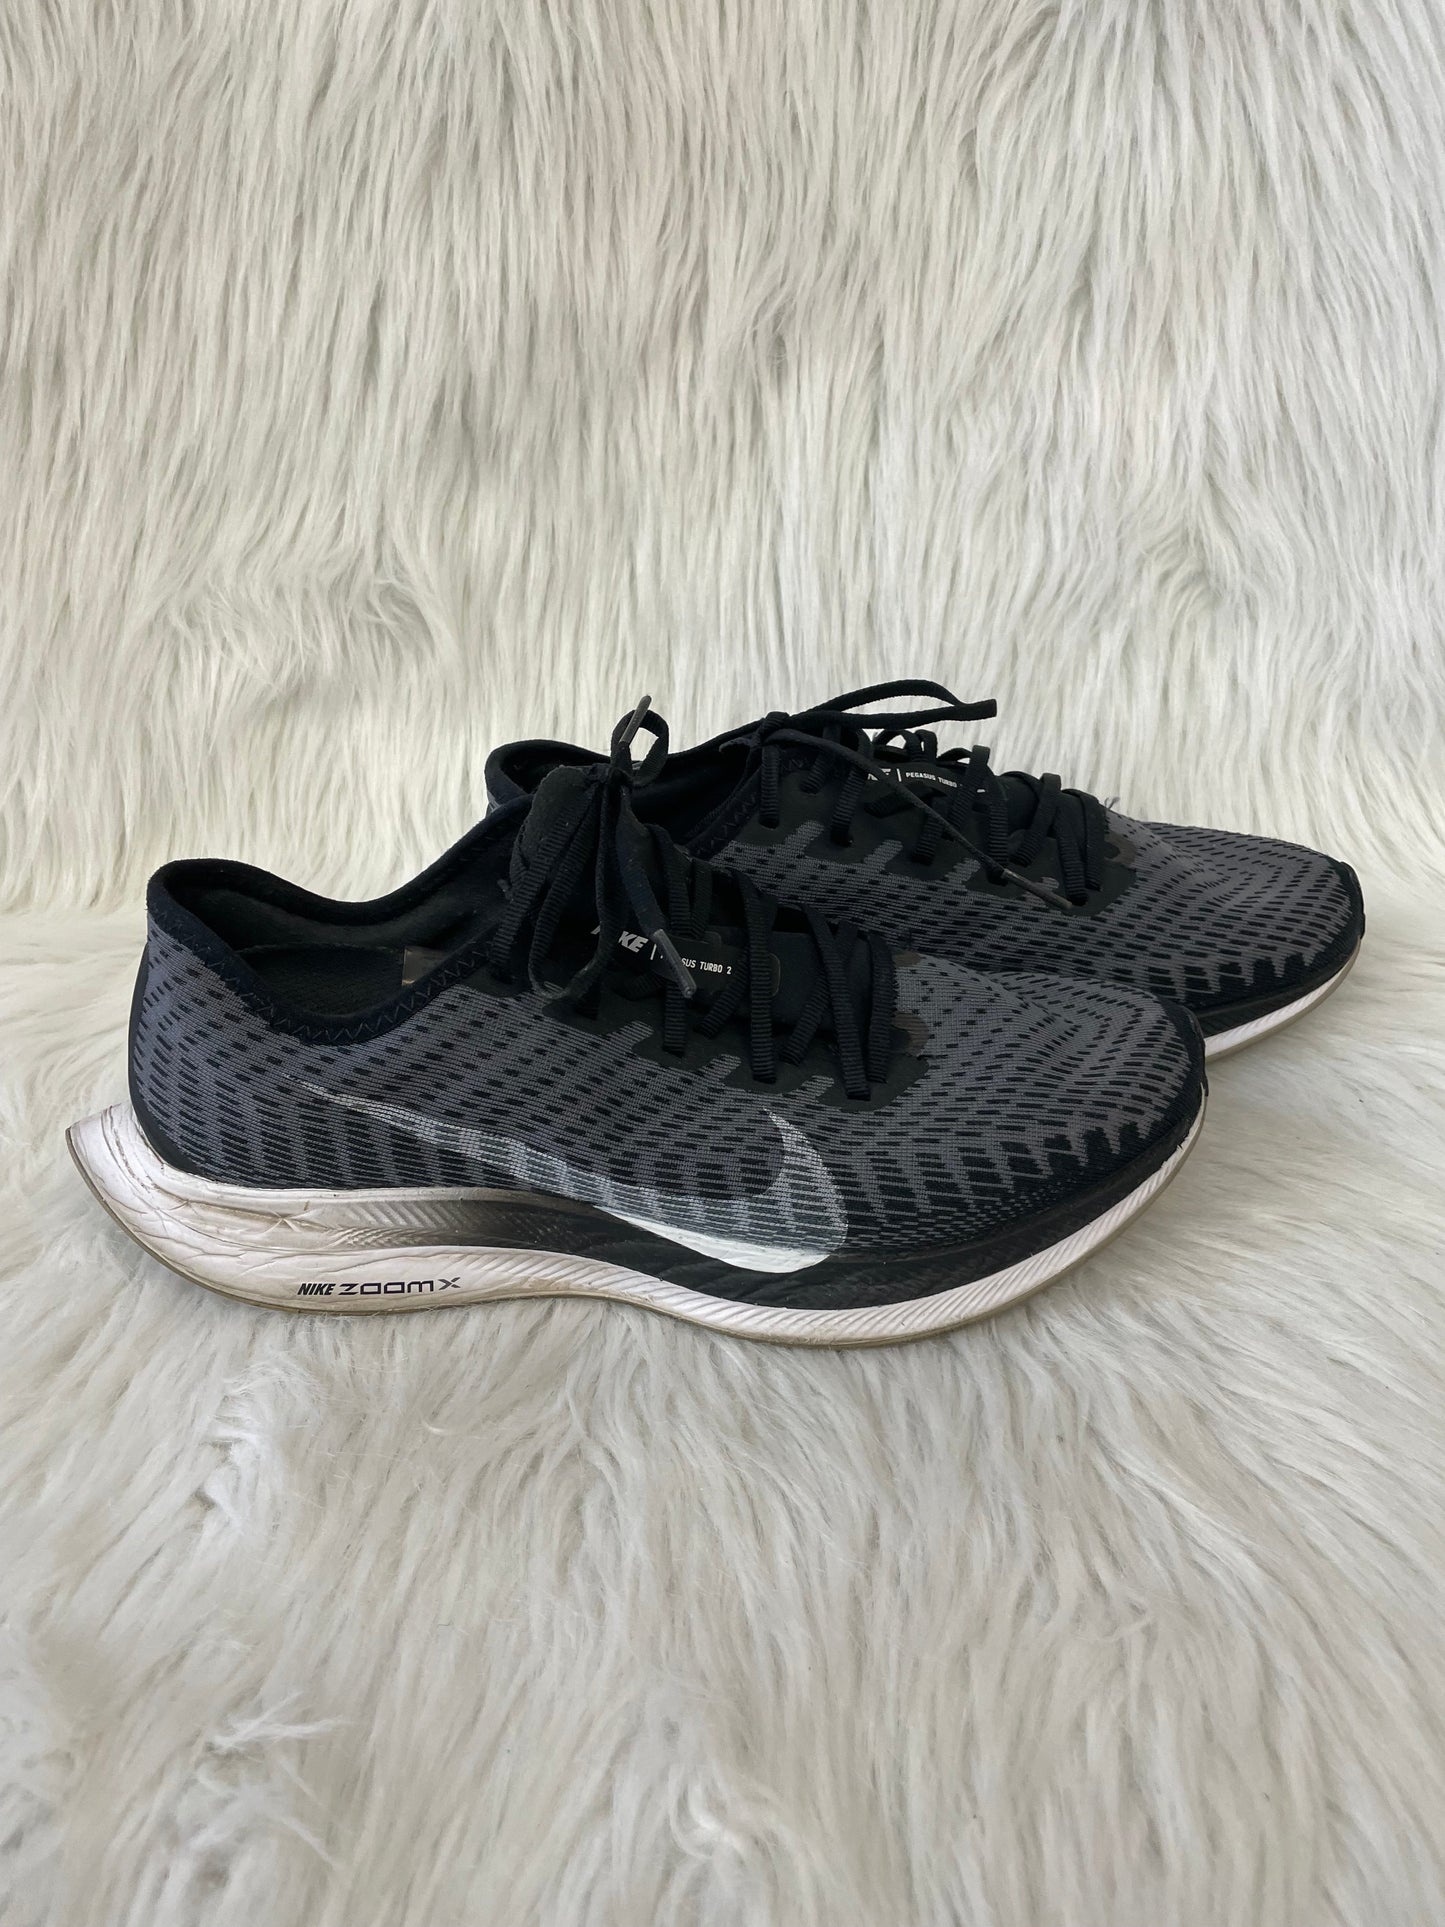 Black & White Shoes Athletic Nike, Size 9.5